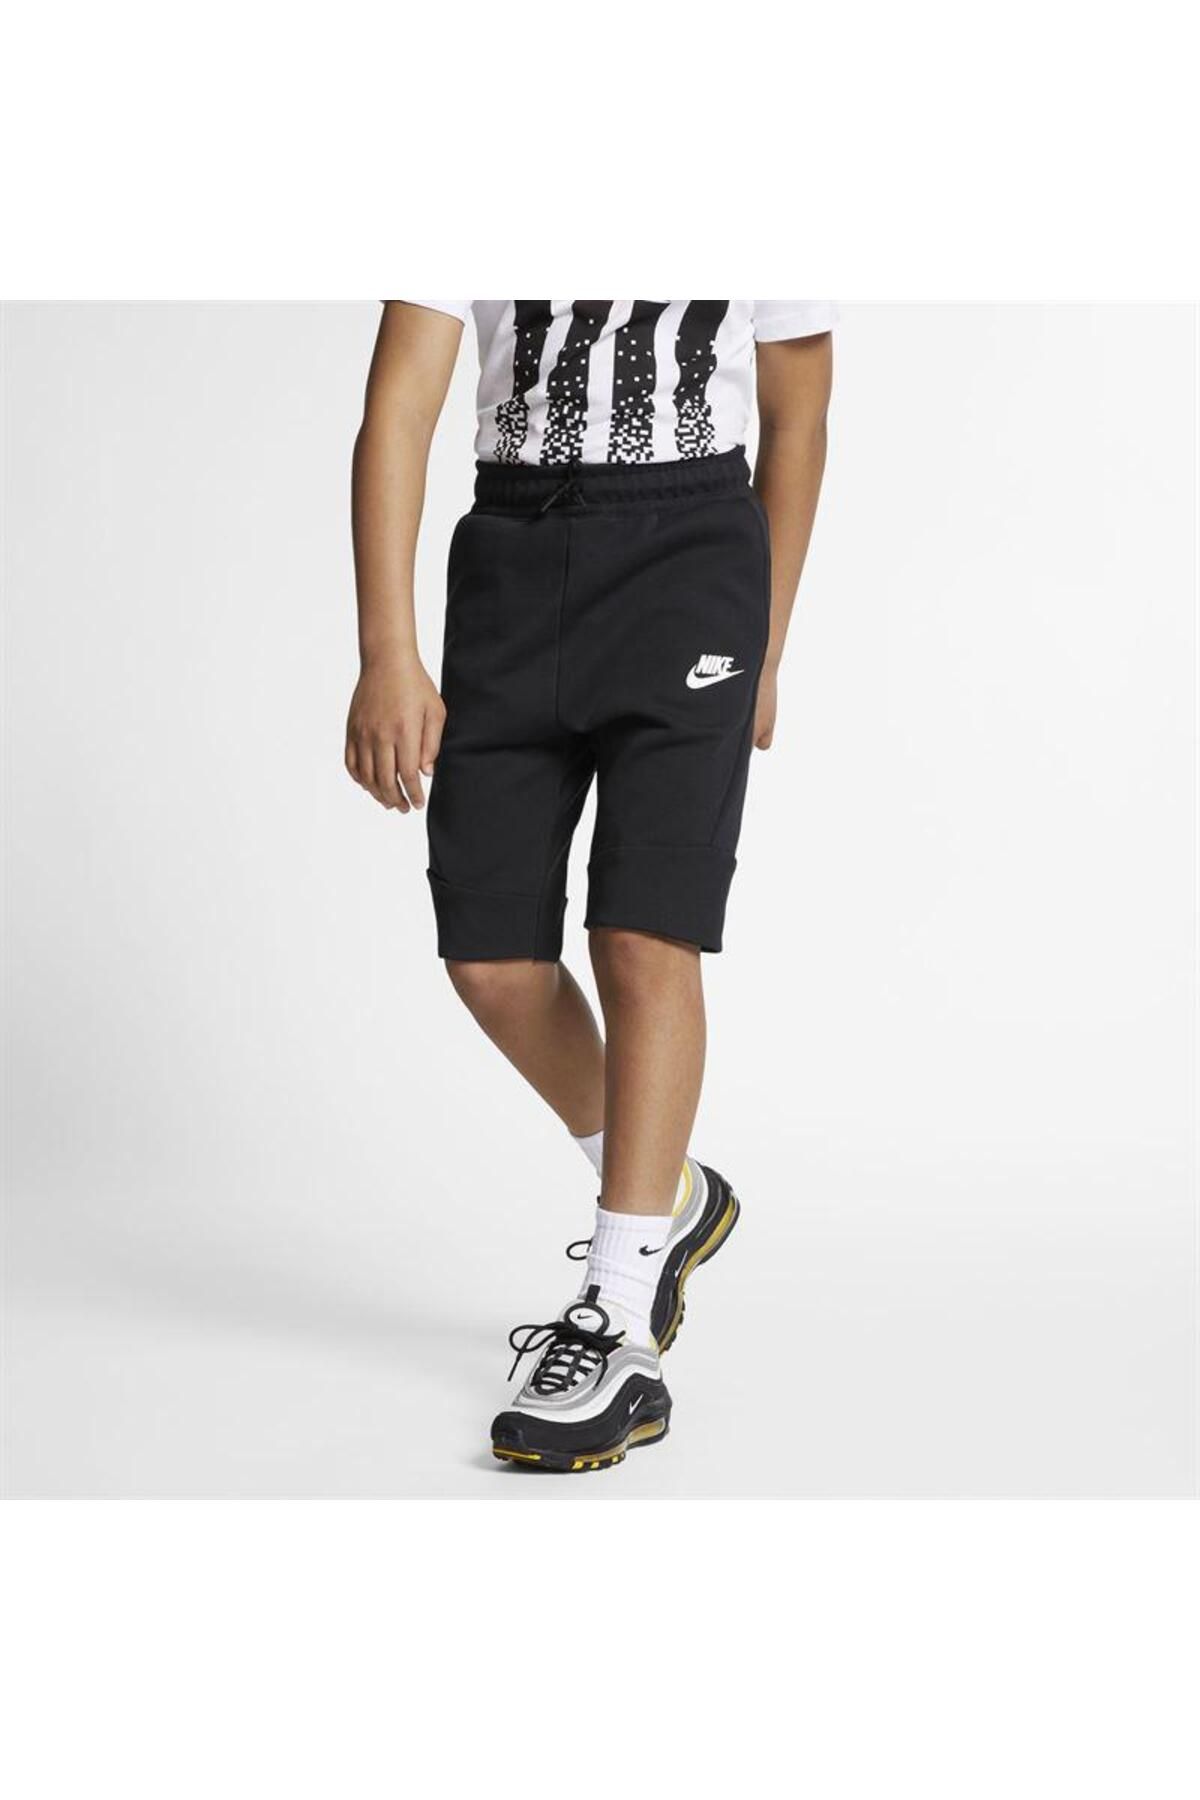 Nike Sportswear Tech Fleece Çocuk Şort 816280-014